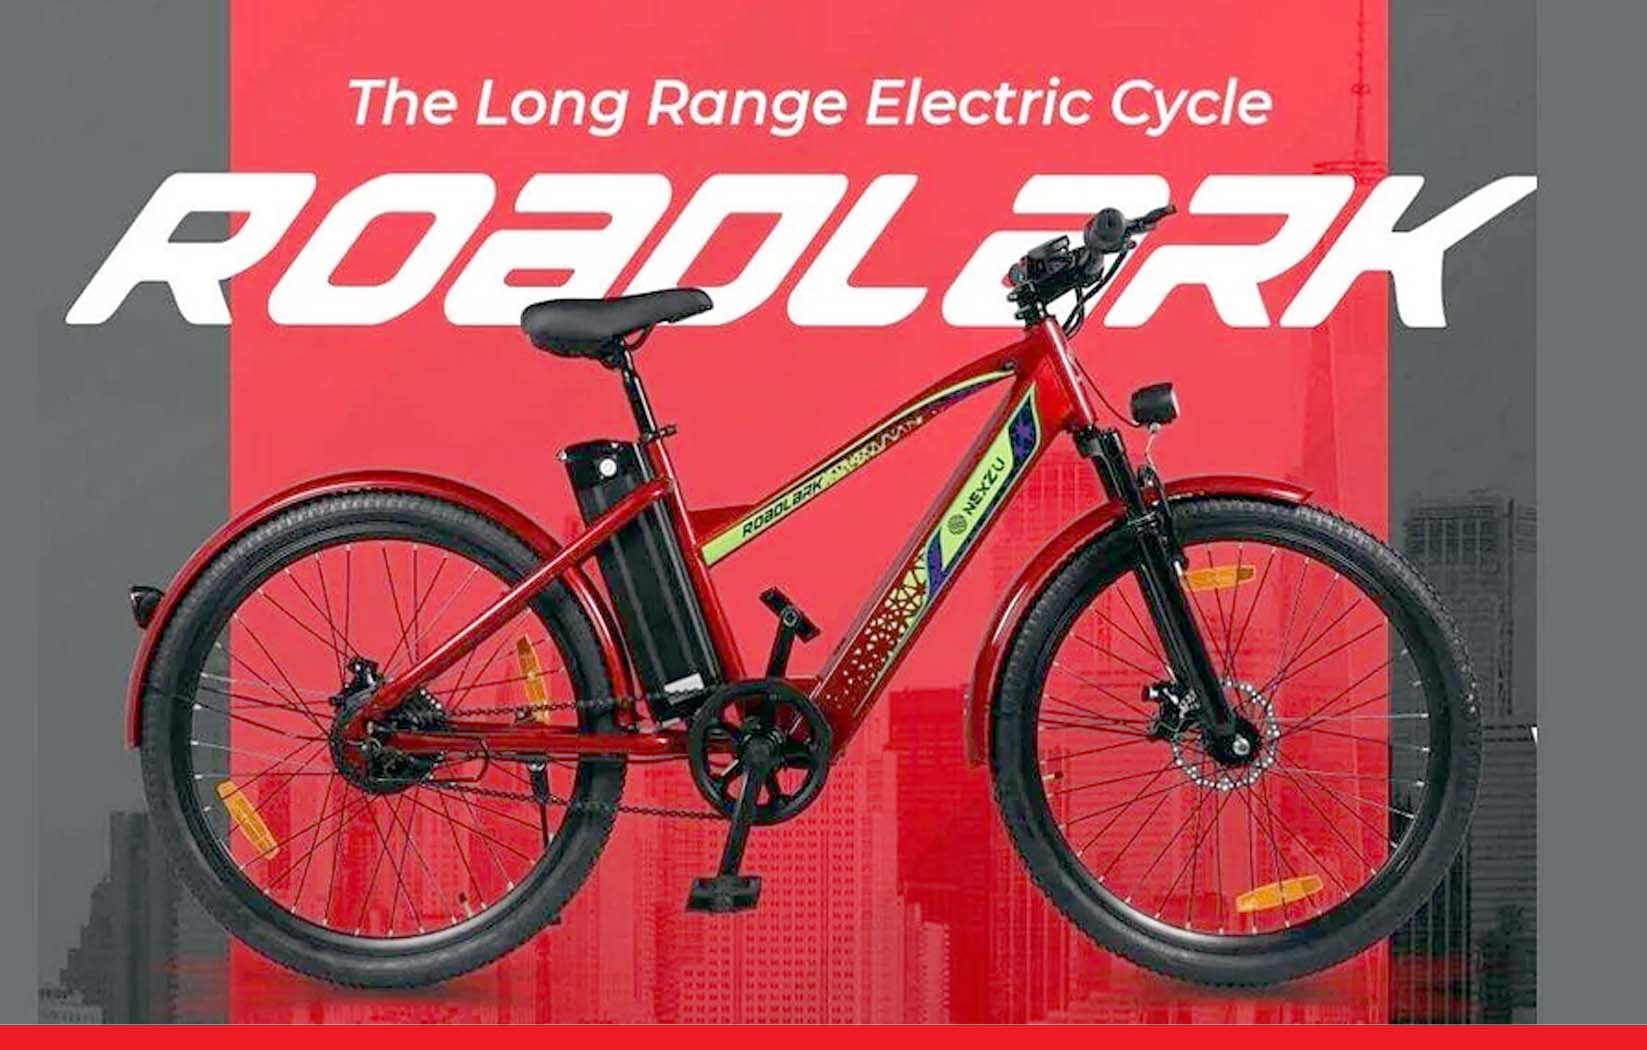 इलेक्ट्रिक स्कूटर्स को टक्कर देगी ये ई-साइकिल, फुल चार्ज पर मिलेगी 100 किलोमीटर की रेंज